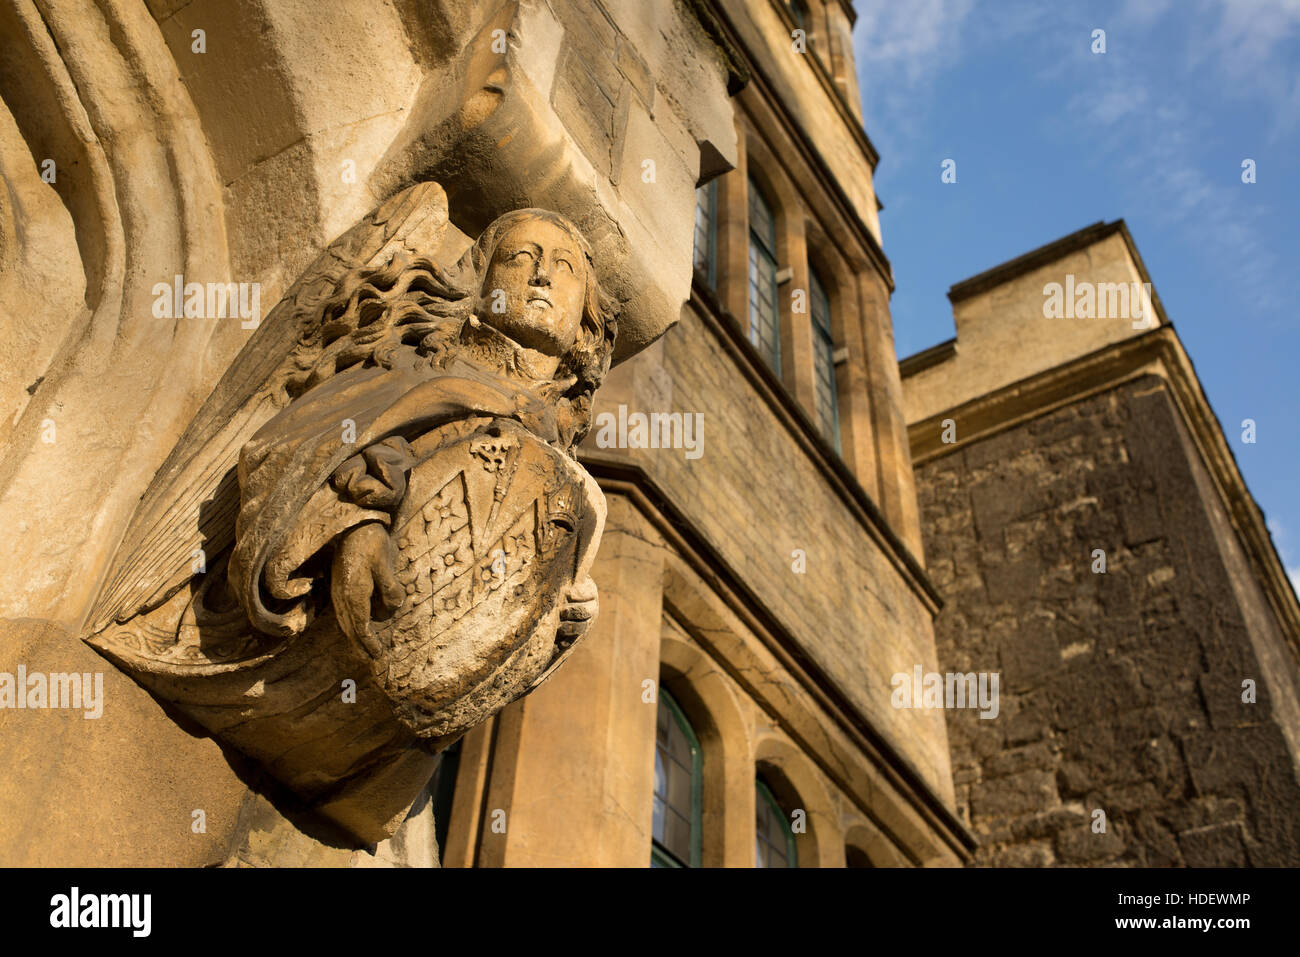 Mittelalterliche gotische Skulptur, die einen Engel mit langen Haaren, einen Schild graviert auf braunen Stein auf das äußere eines alten Gebäudes Stockfoto